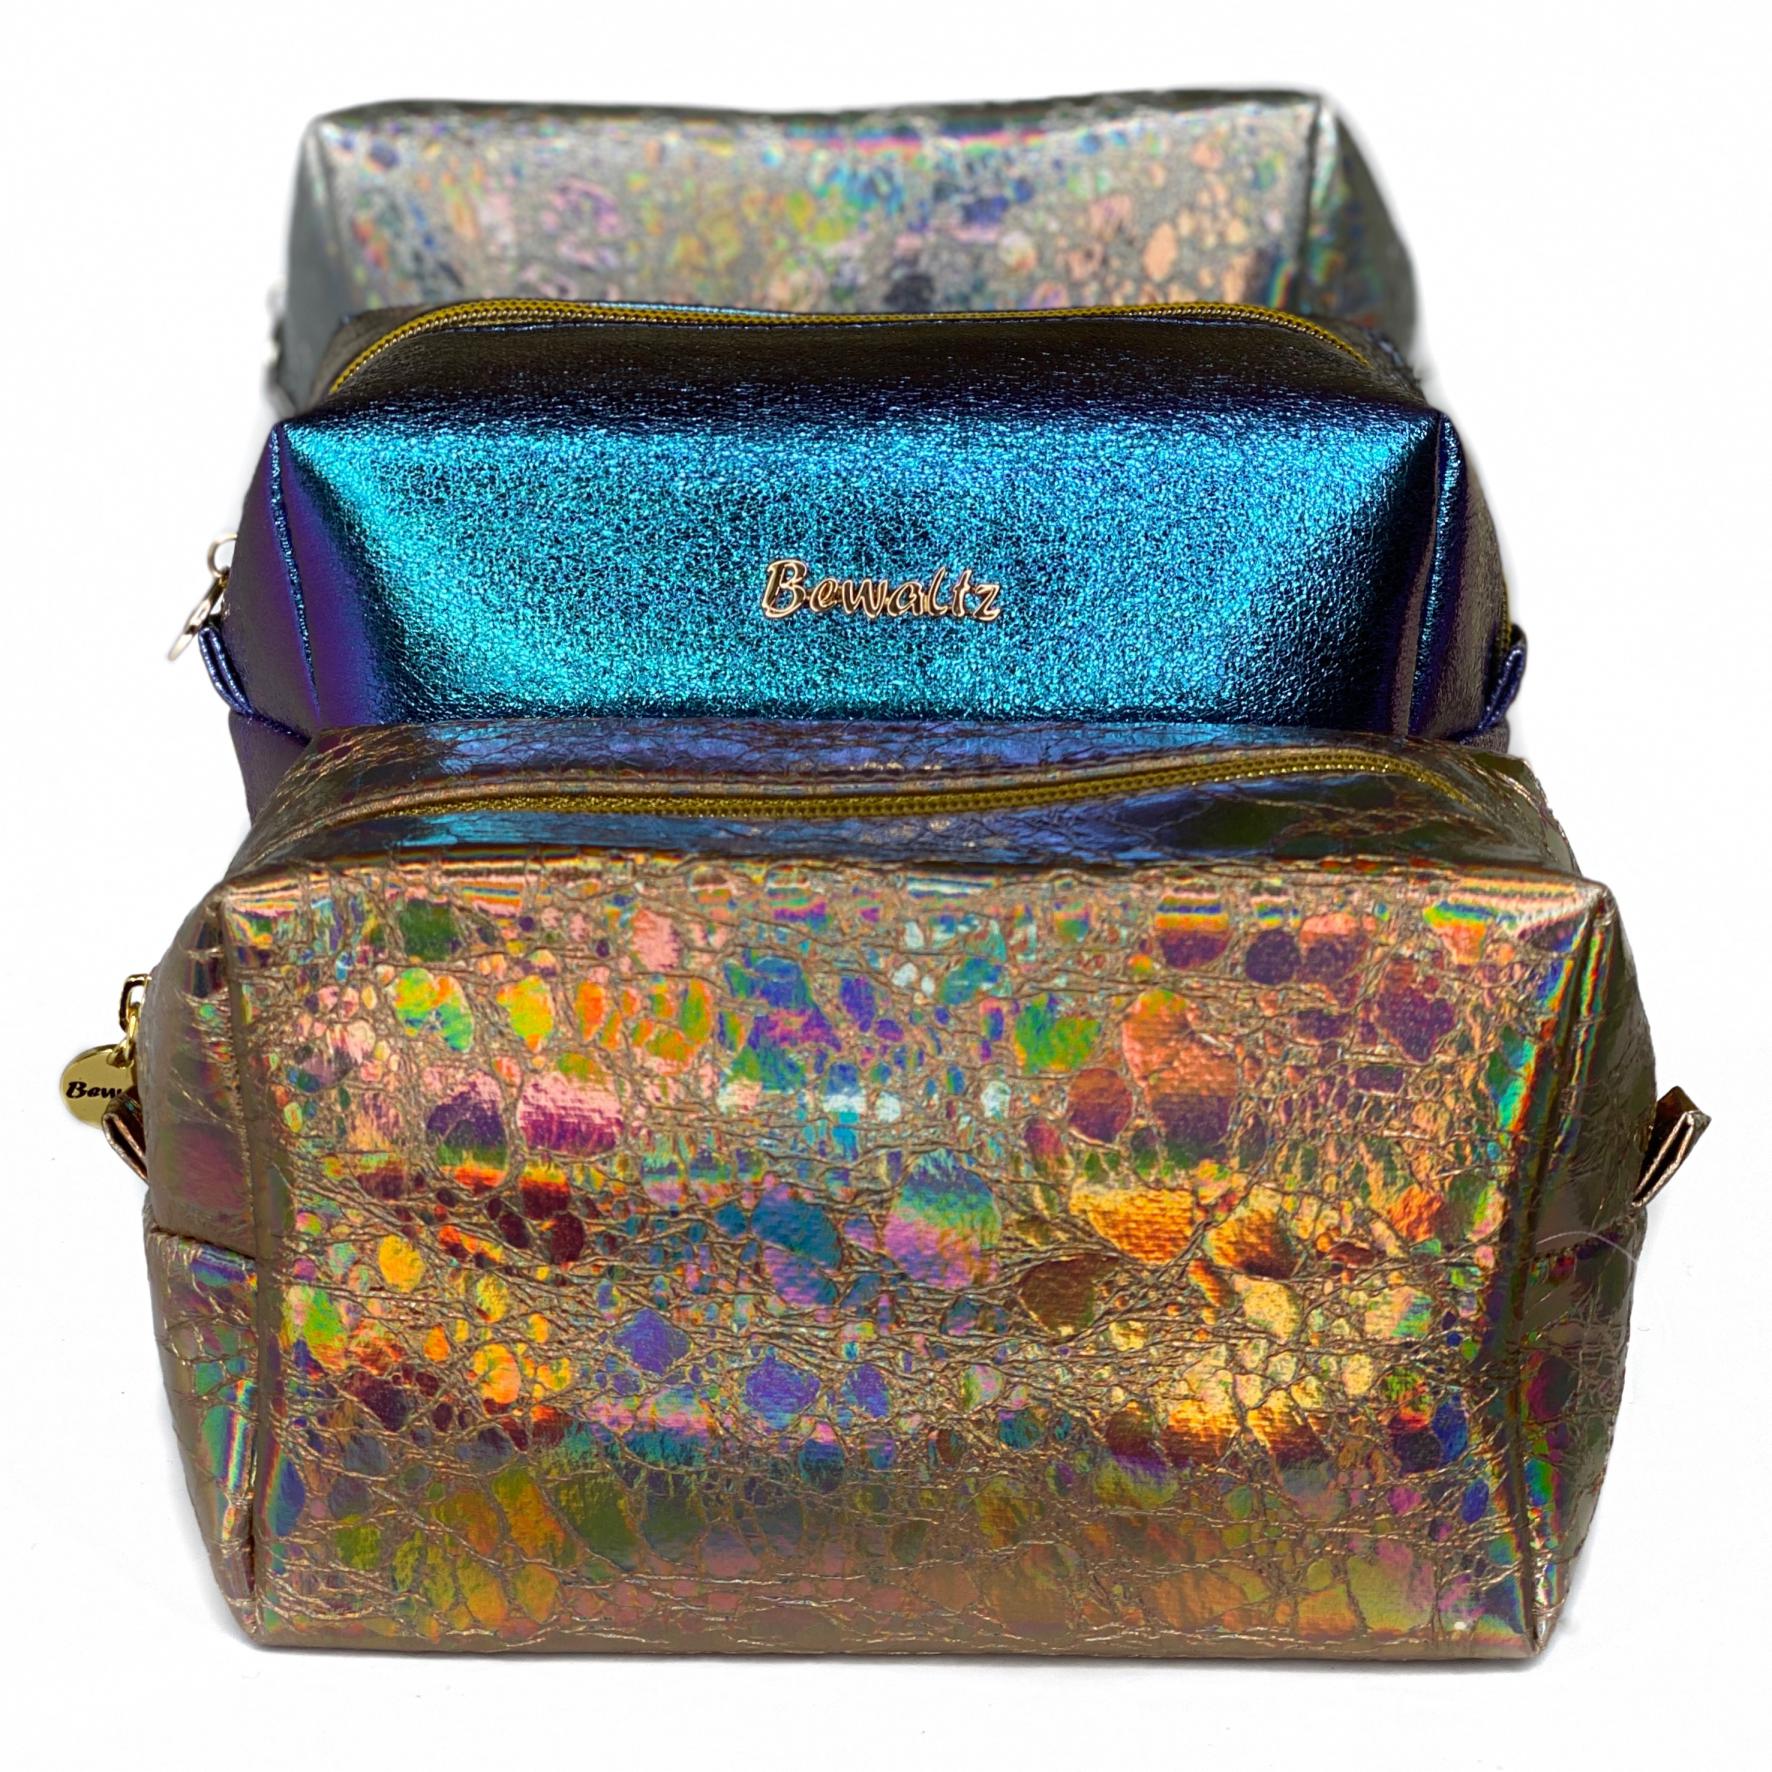 Holographic Makeup Bag